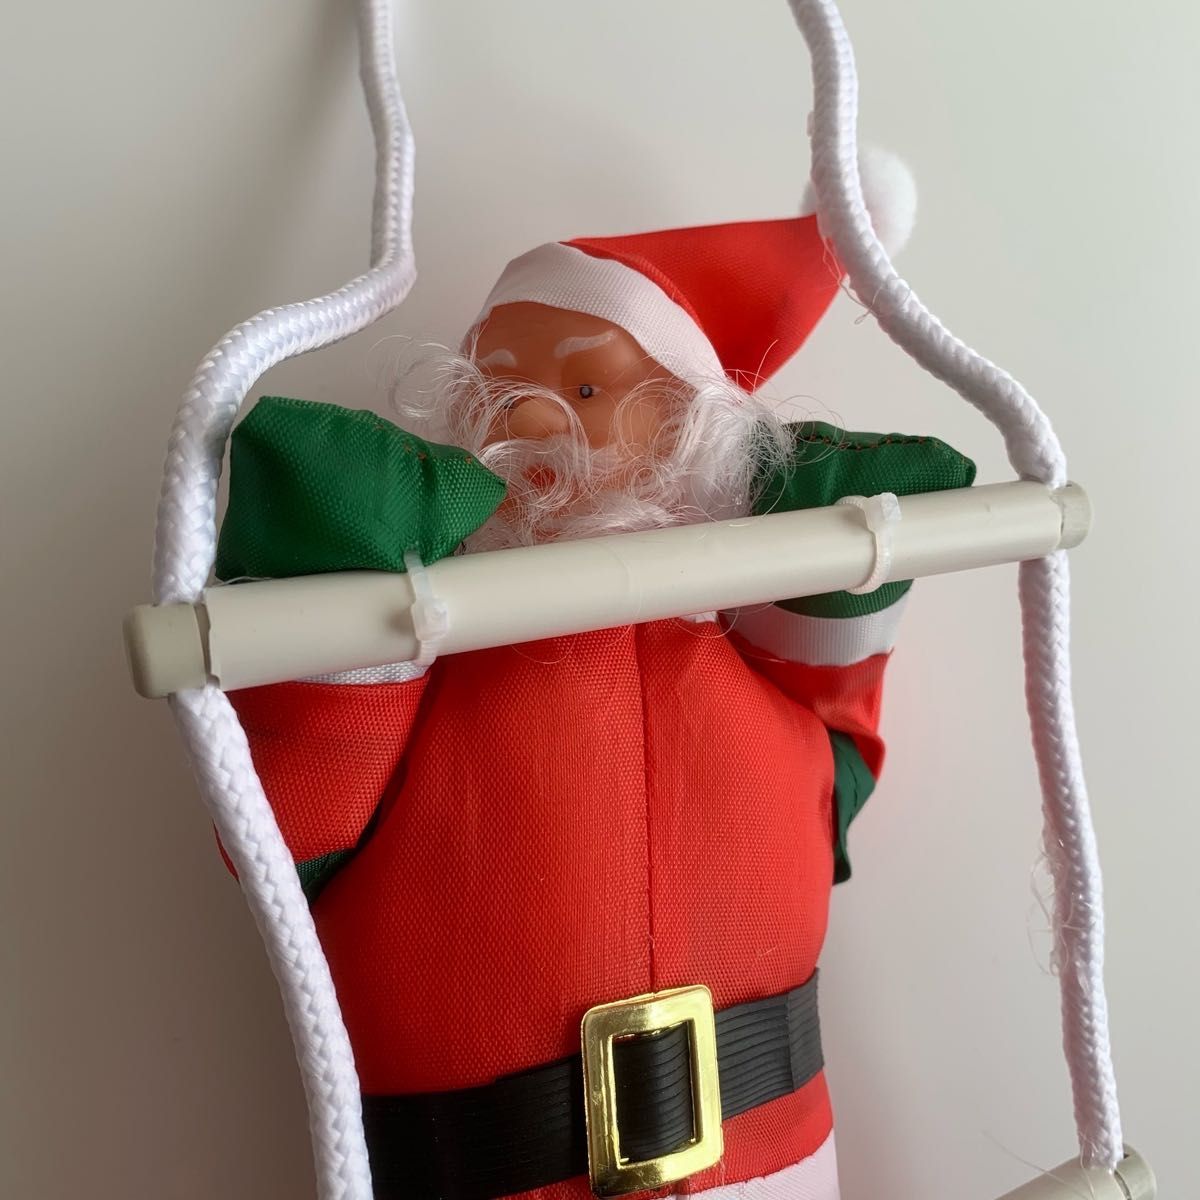 小人サンタクロース梯子ハシゴクリスマスオーナメントツリー飾り装飾ぬいぐるみお人形